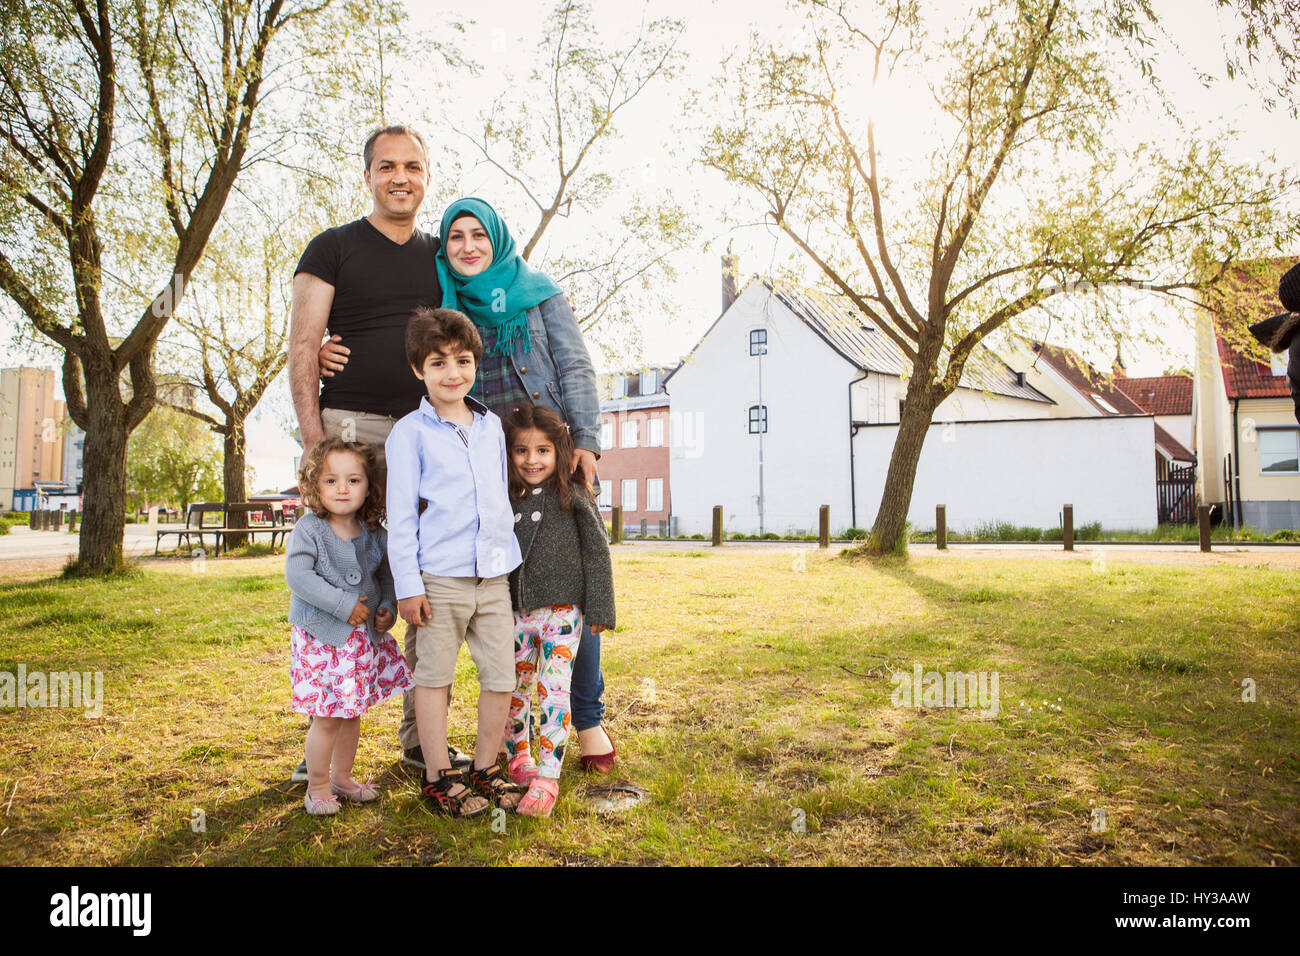 Sweden, Blekinge, Solvesborg, Family posing in park Stock Photo